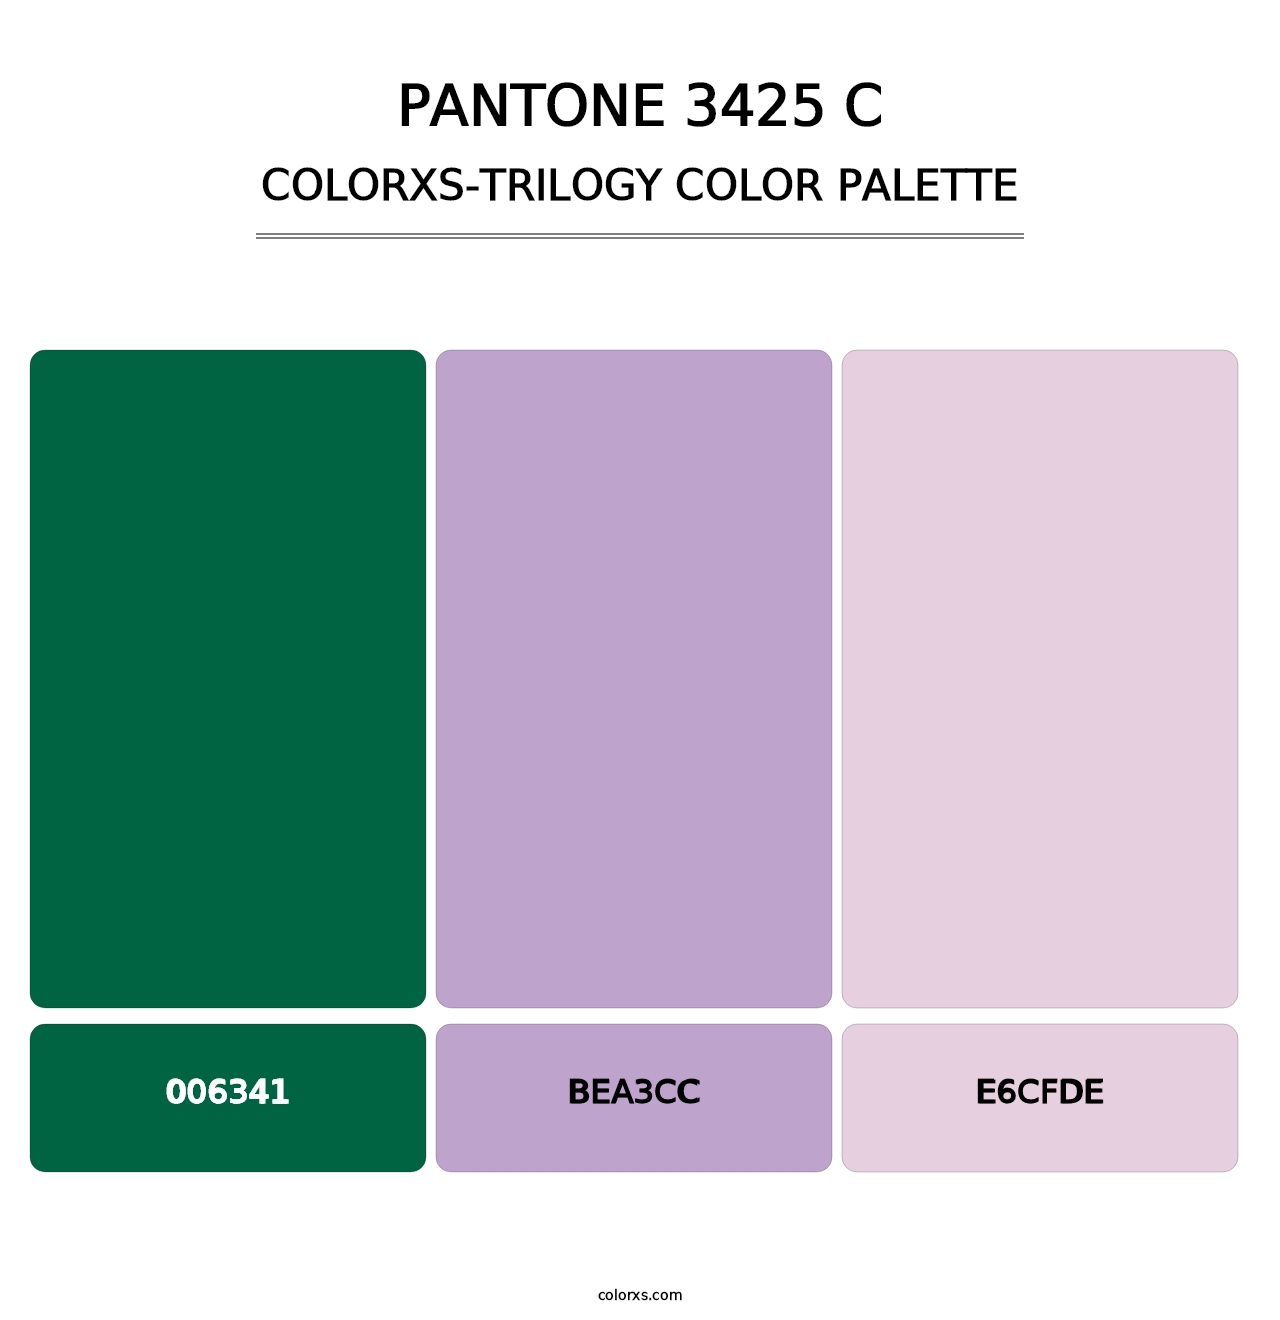 PANTONE 3425 C - Colorxs Trilogy Palette